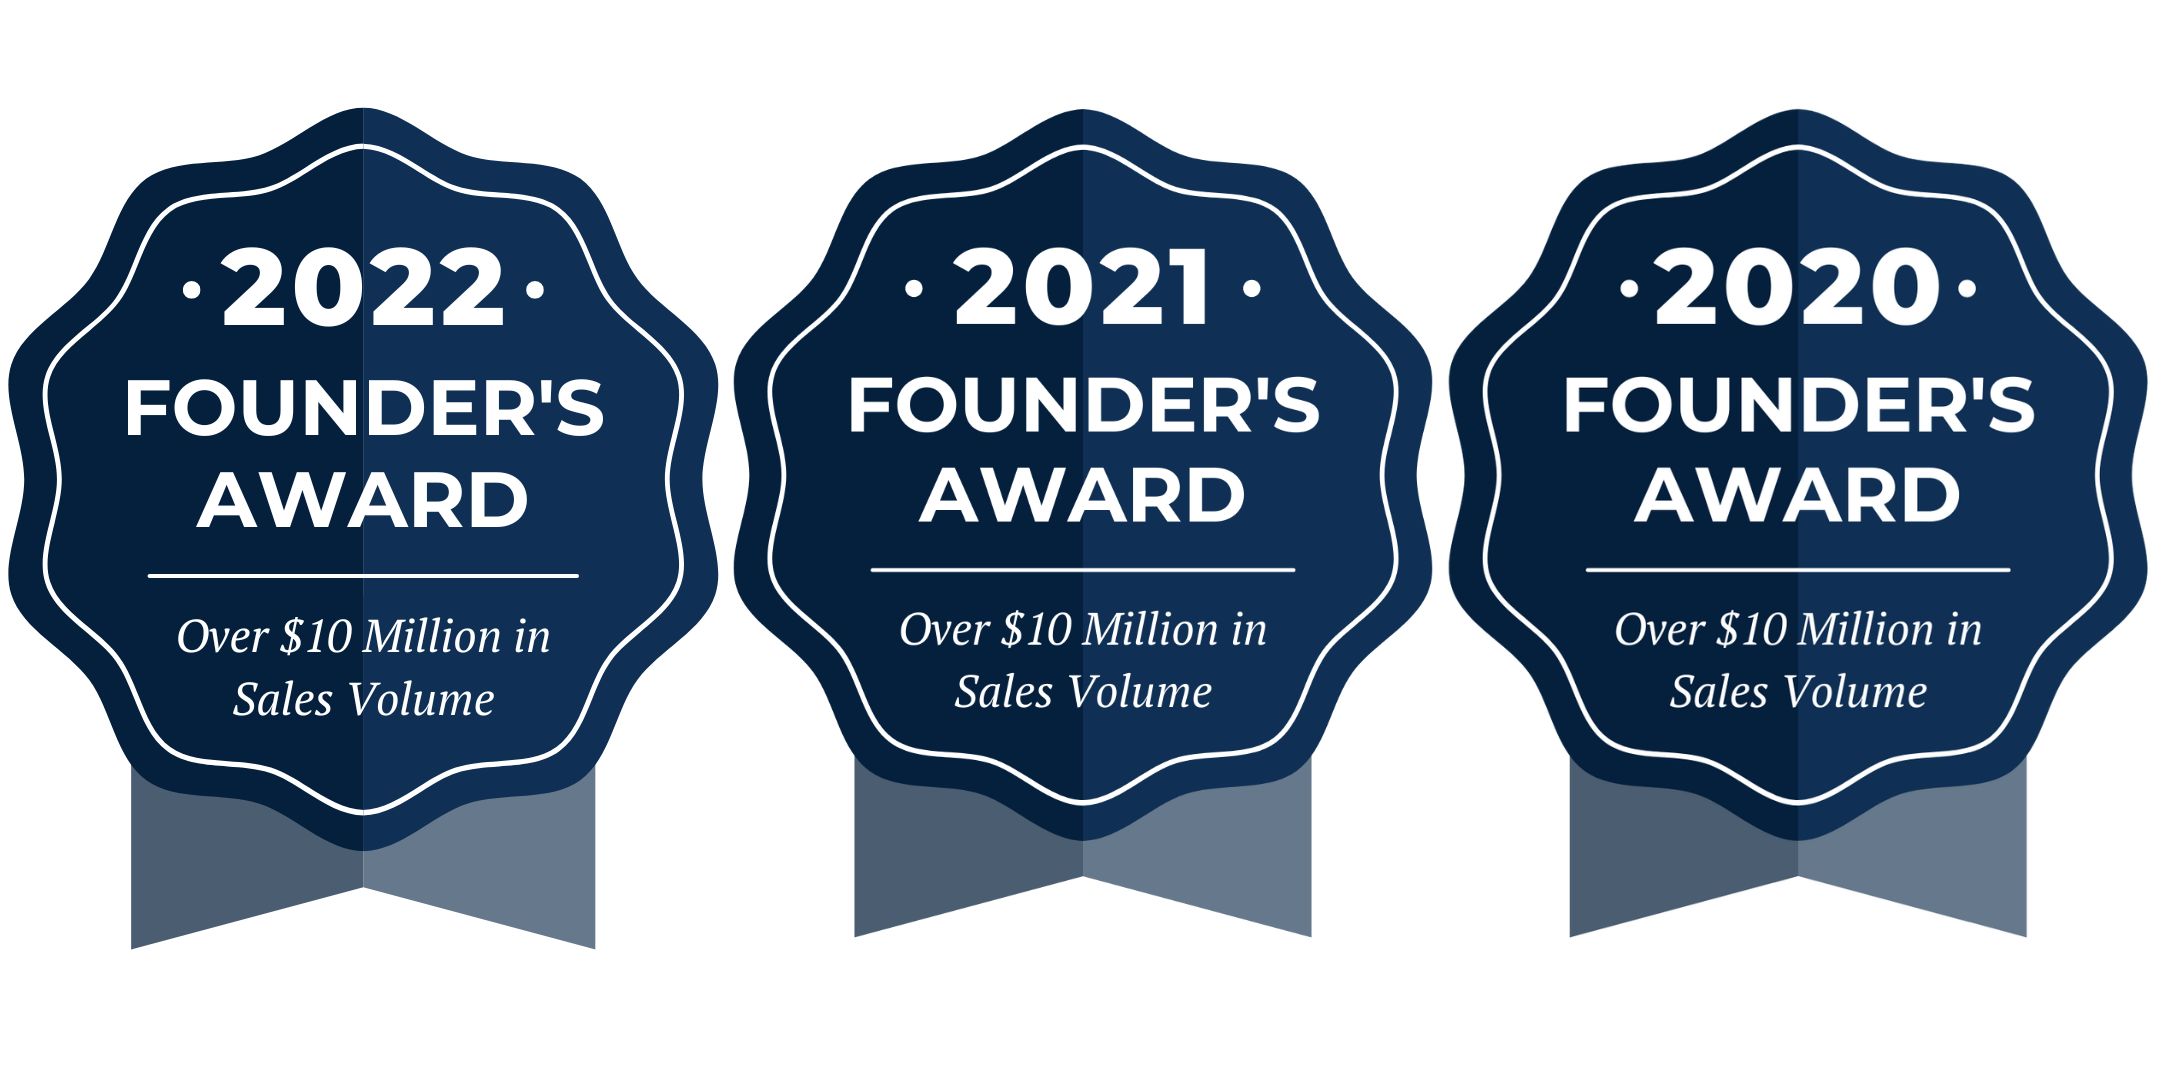 2022 Founder's Award, 2021 Founder's Award, 2020 Founder's Award